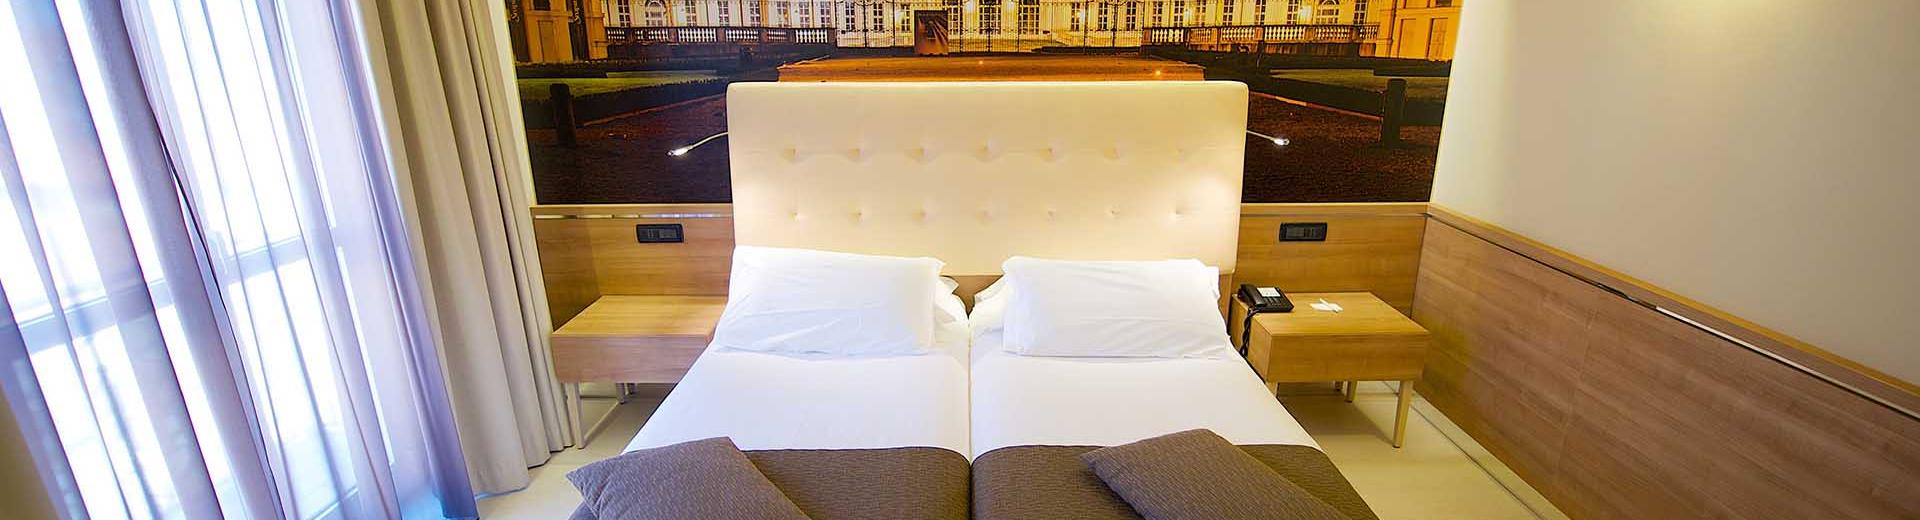 Las junior suites en el Best Western Hotel Luxor. hotel 3 estrellas en Turín